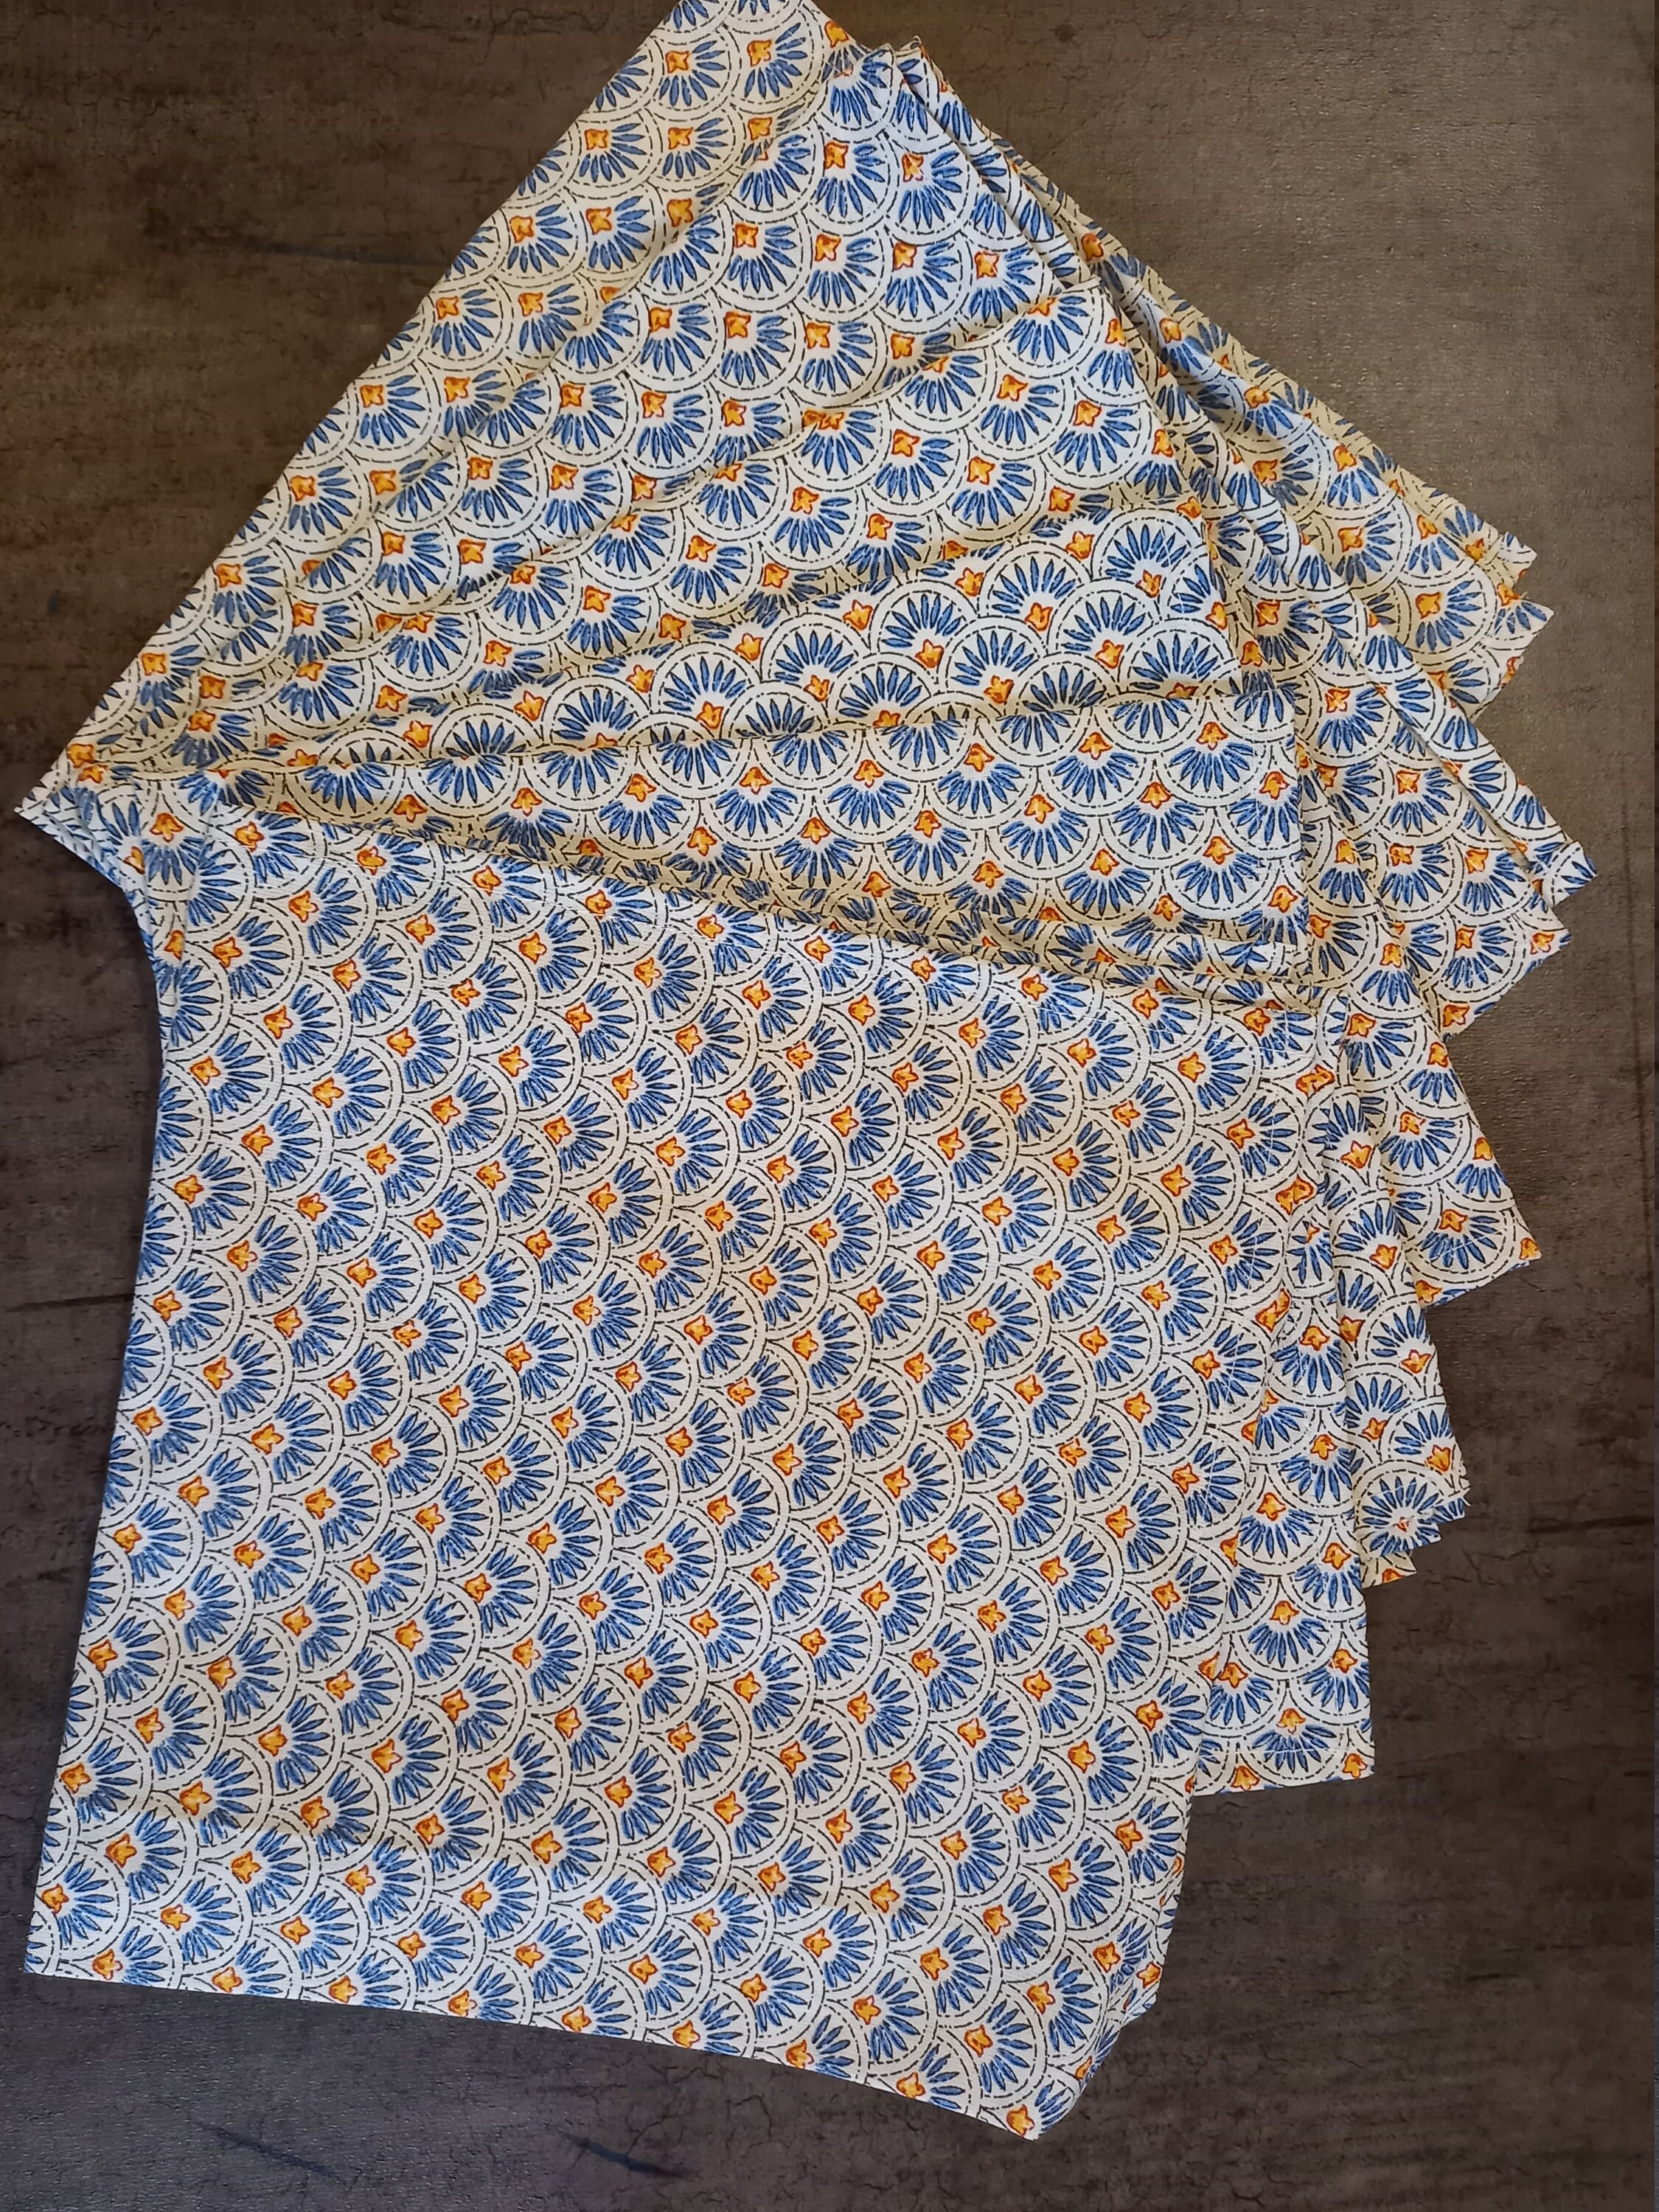 6 Serviettes de Table Coton Motif Ecailles Coloris Bleu